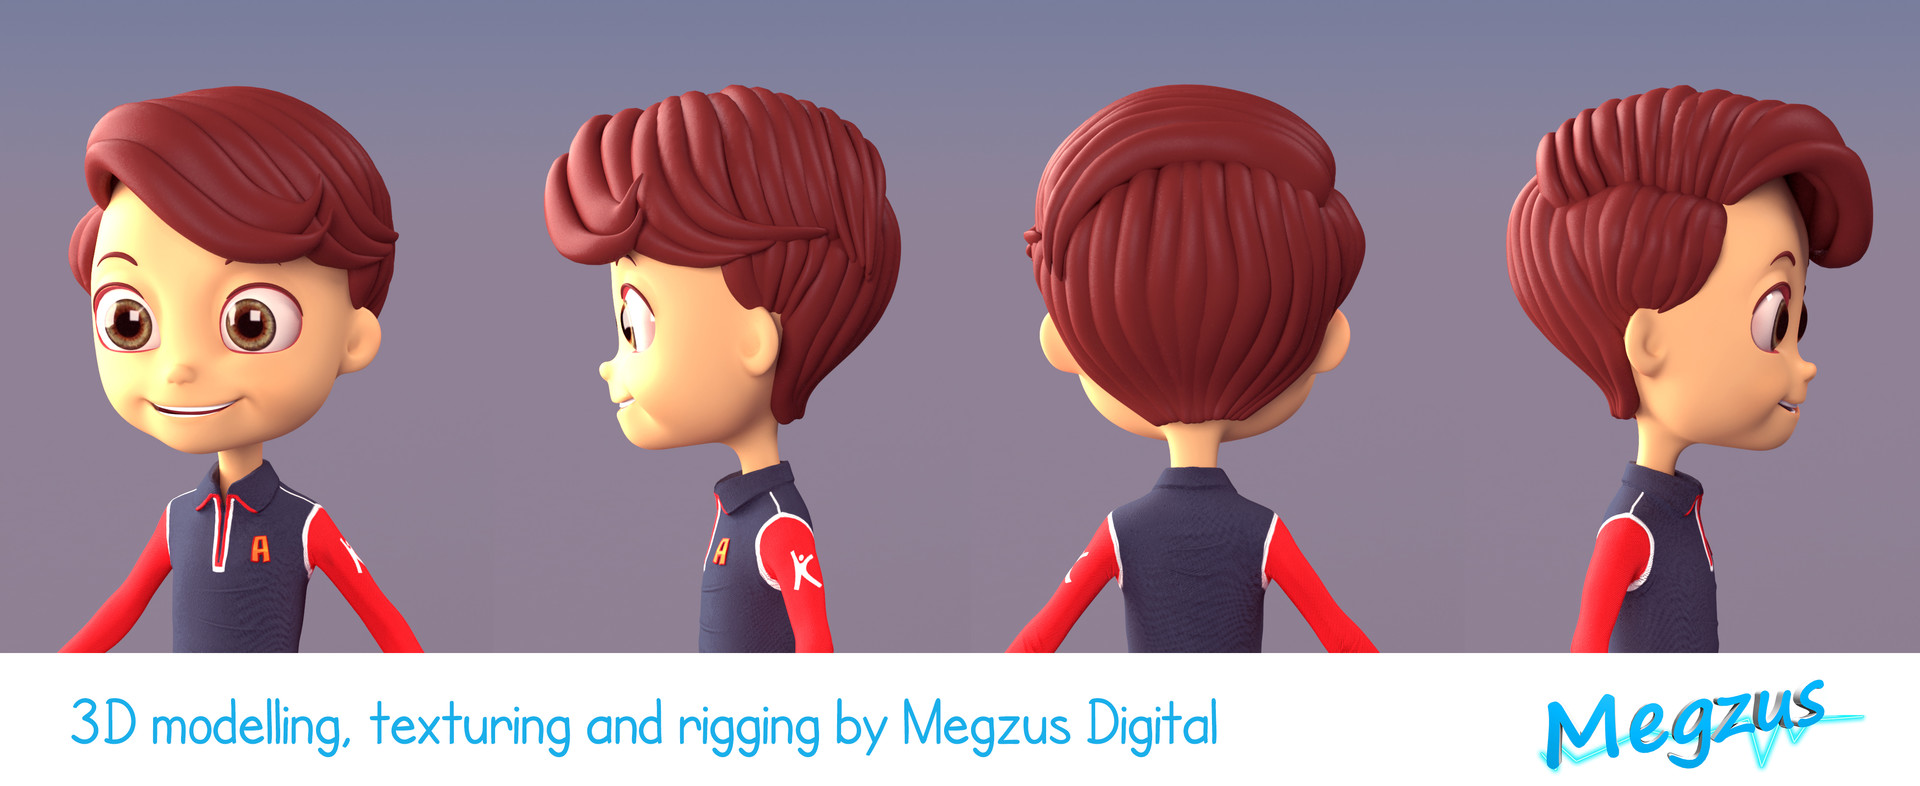 ArtStation - 3D Boy Character for Kids Product Branding